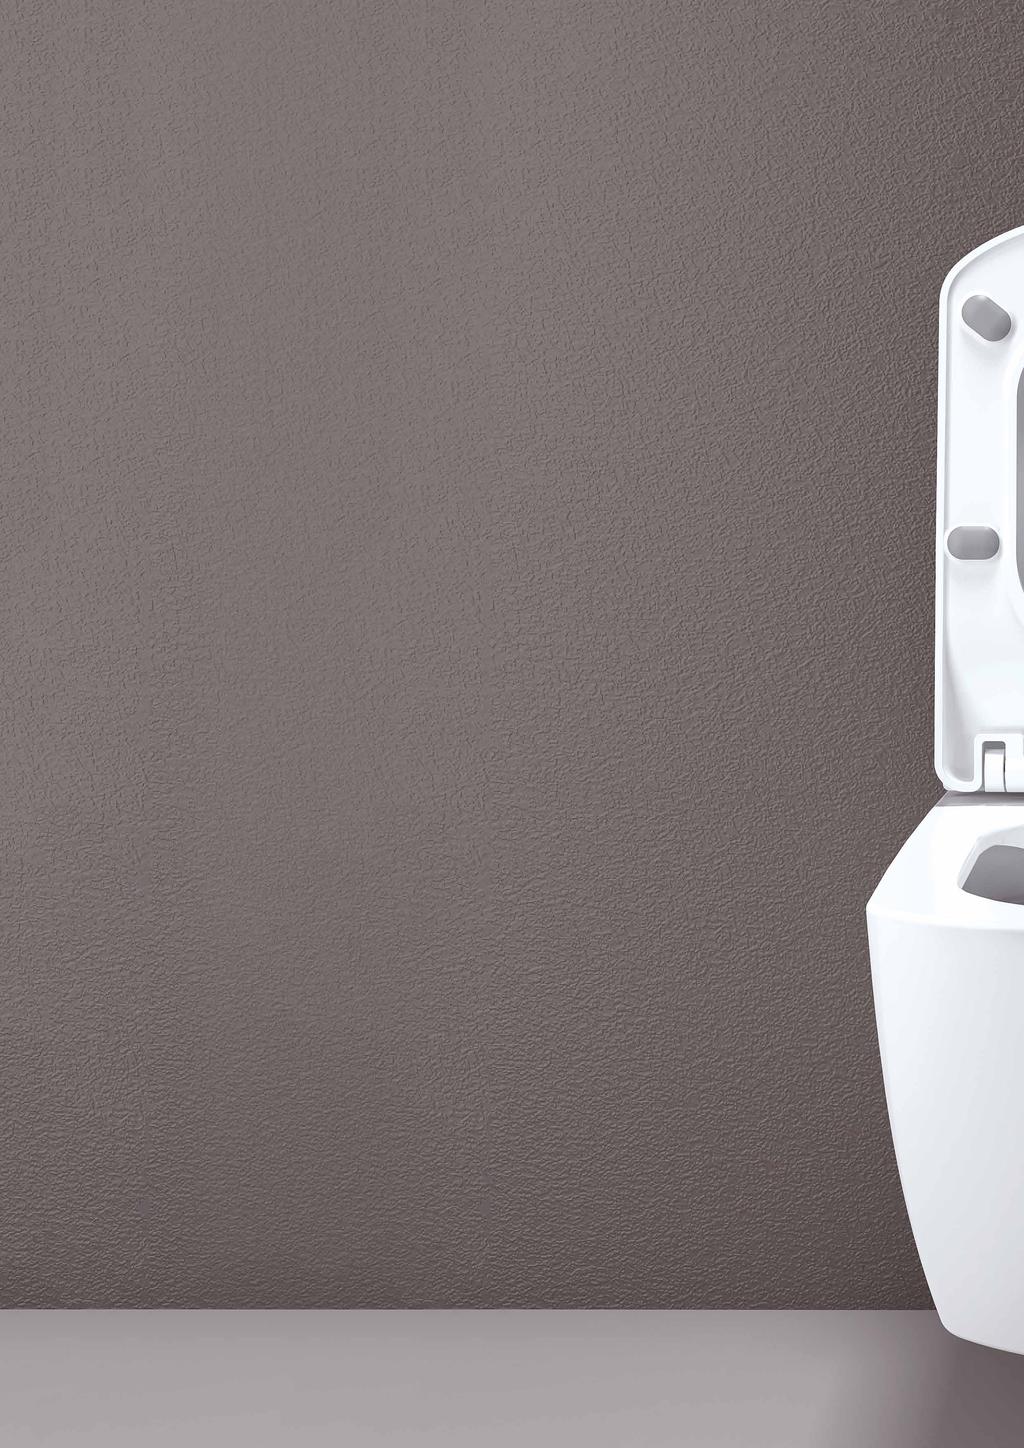 WC+BIDET 2v1 CREAVIT Spojenie WC a bidetu v jednom zariadení, ktoré šetrí vaše peniaze a miesto v kúpeľni. Vďaka zabudovanej nastaviteľnej tryske sa výborne hodí aj do tých najmenších kúpeľní.